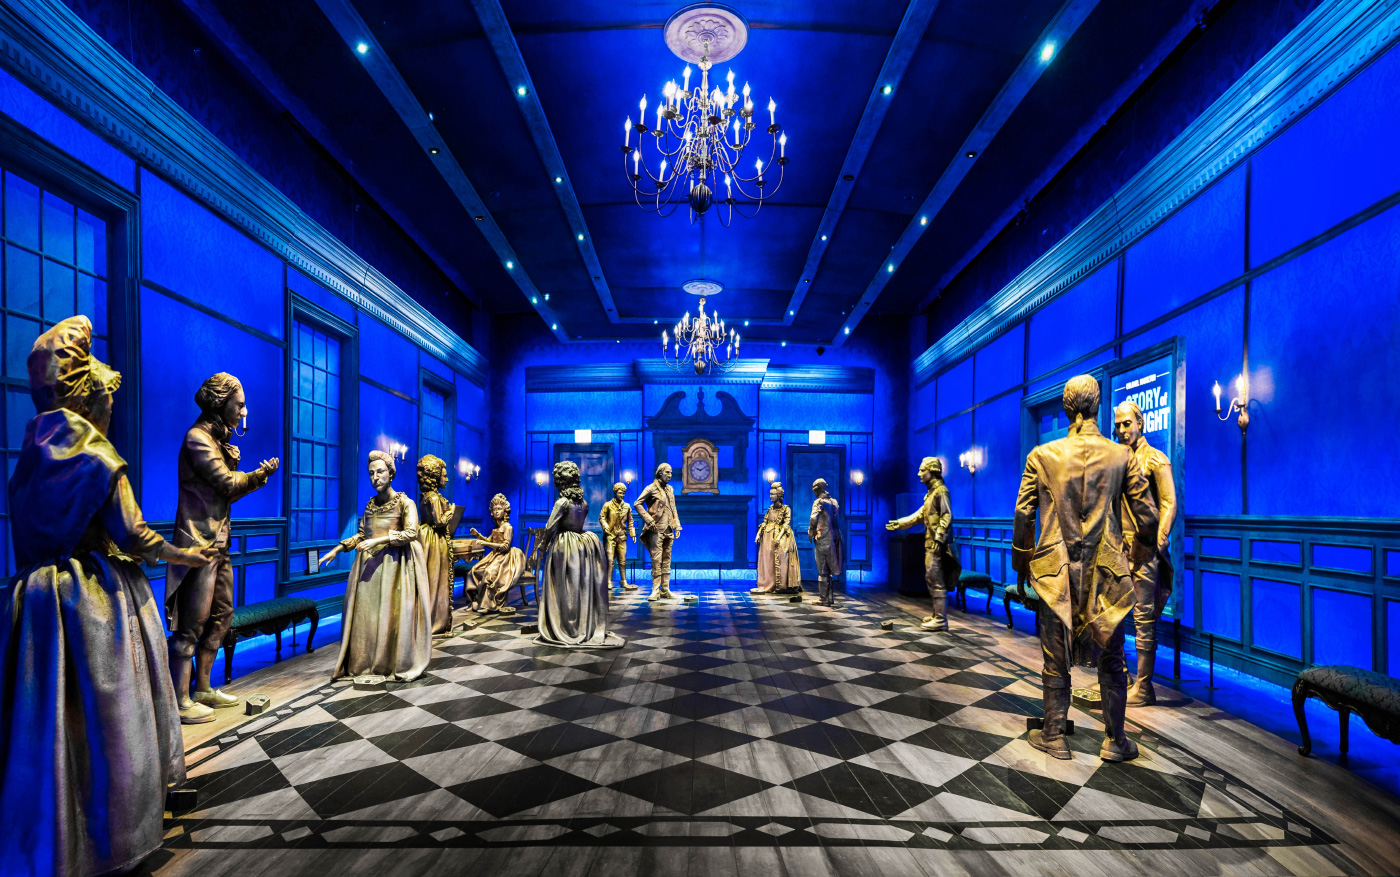 一张蓝色舞厅的照片，有方格地板和人体模型